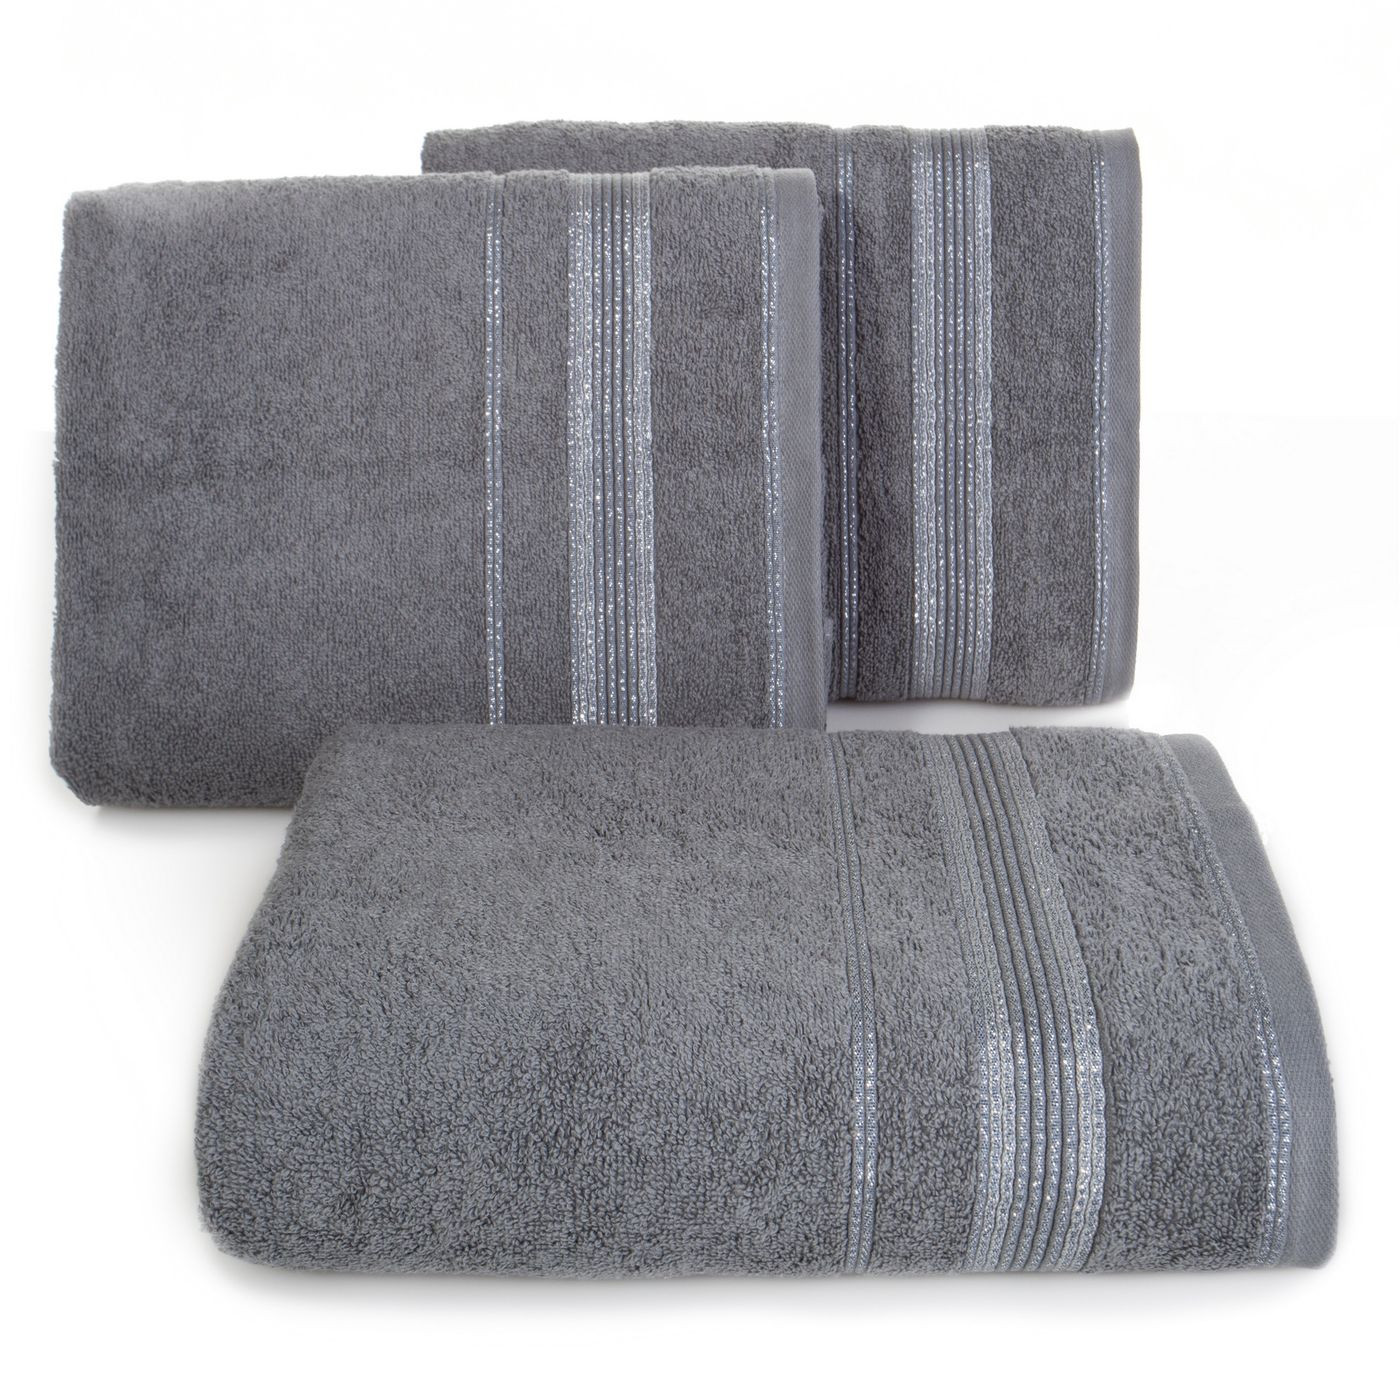 Ręcznik z bawełny z bordiurą podkreśloną srebrną nitką 50x90cm